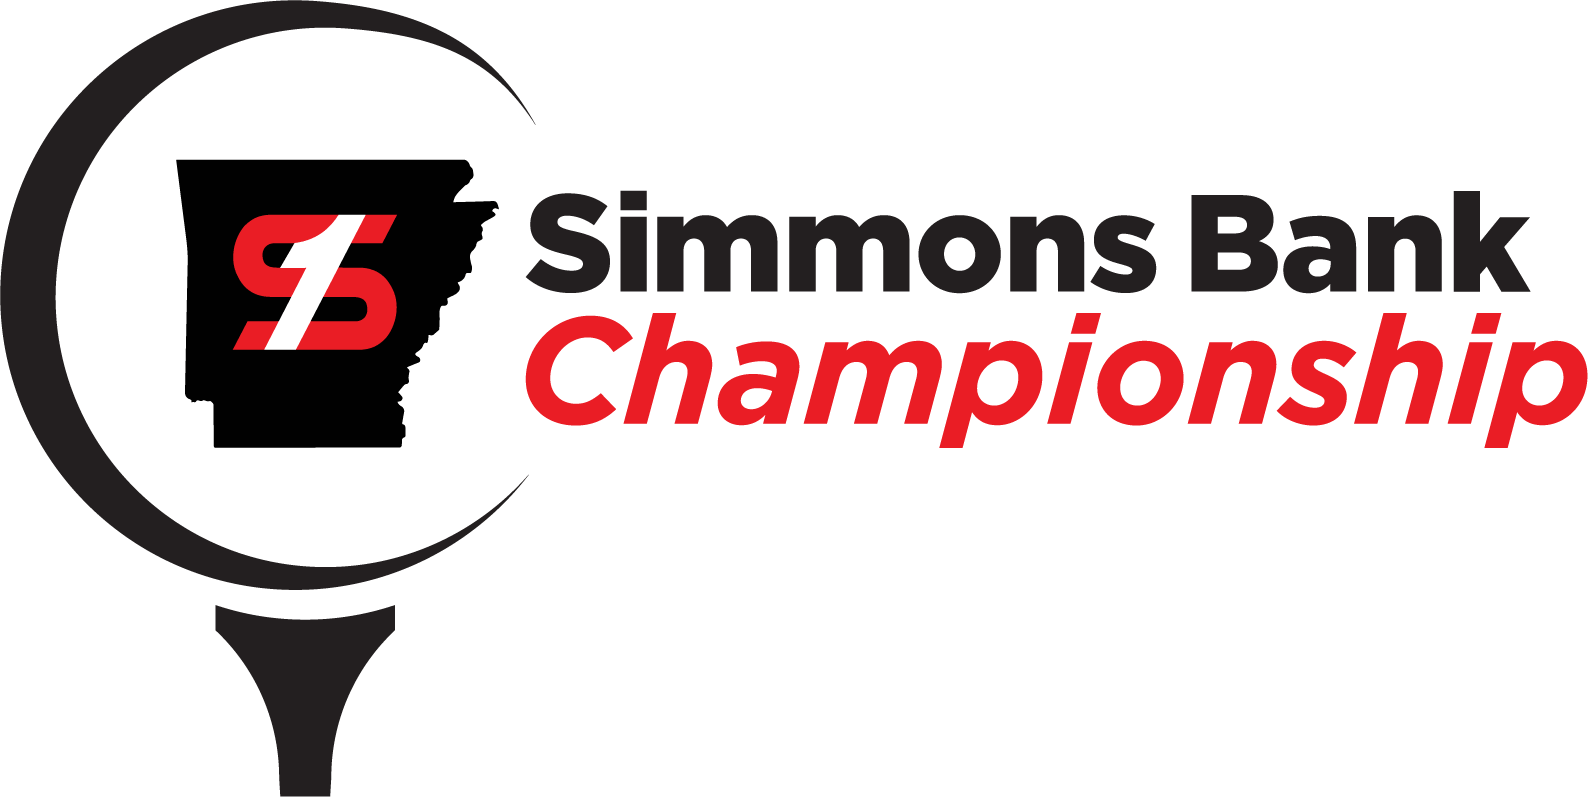 Simmons Bank Championship Logo